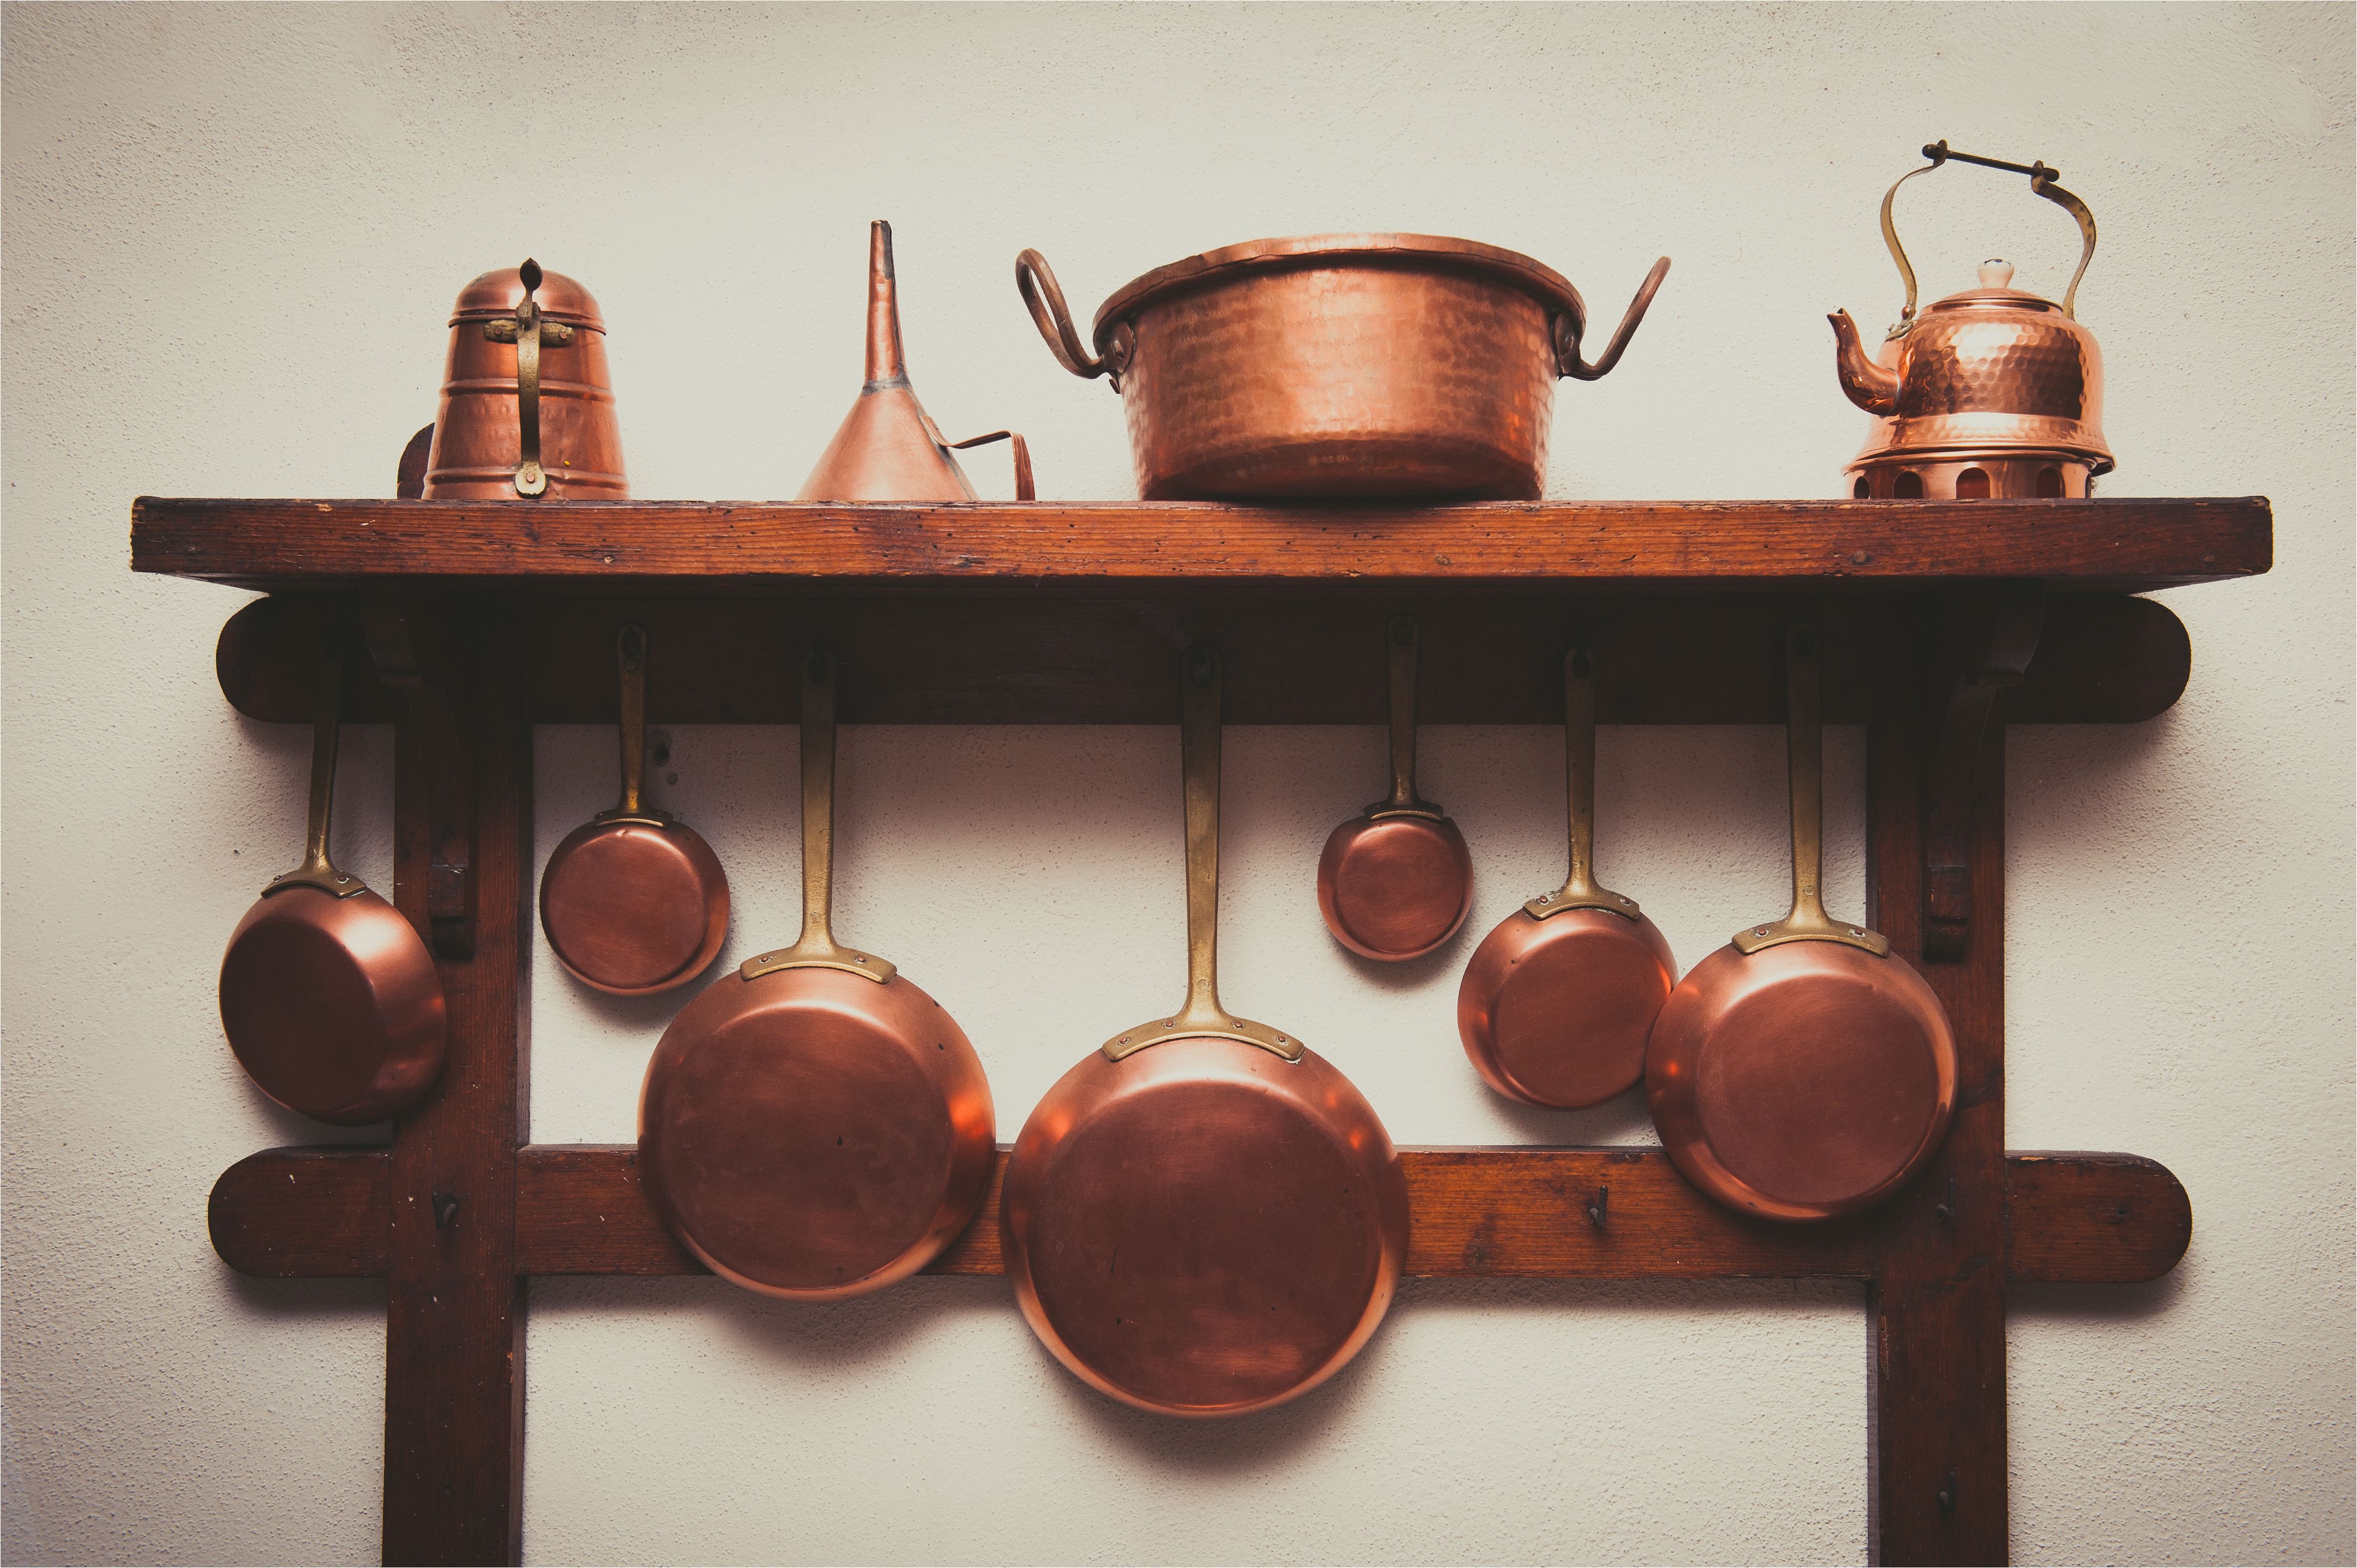 copper kitchen utensils arranged on shelf in kitchen 748567067 5a985da7ae9ab800378d1bff jpg